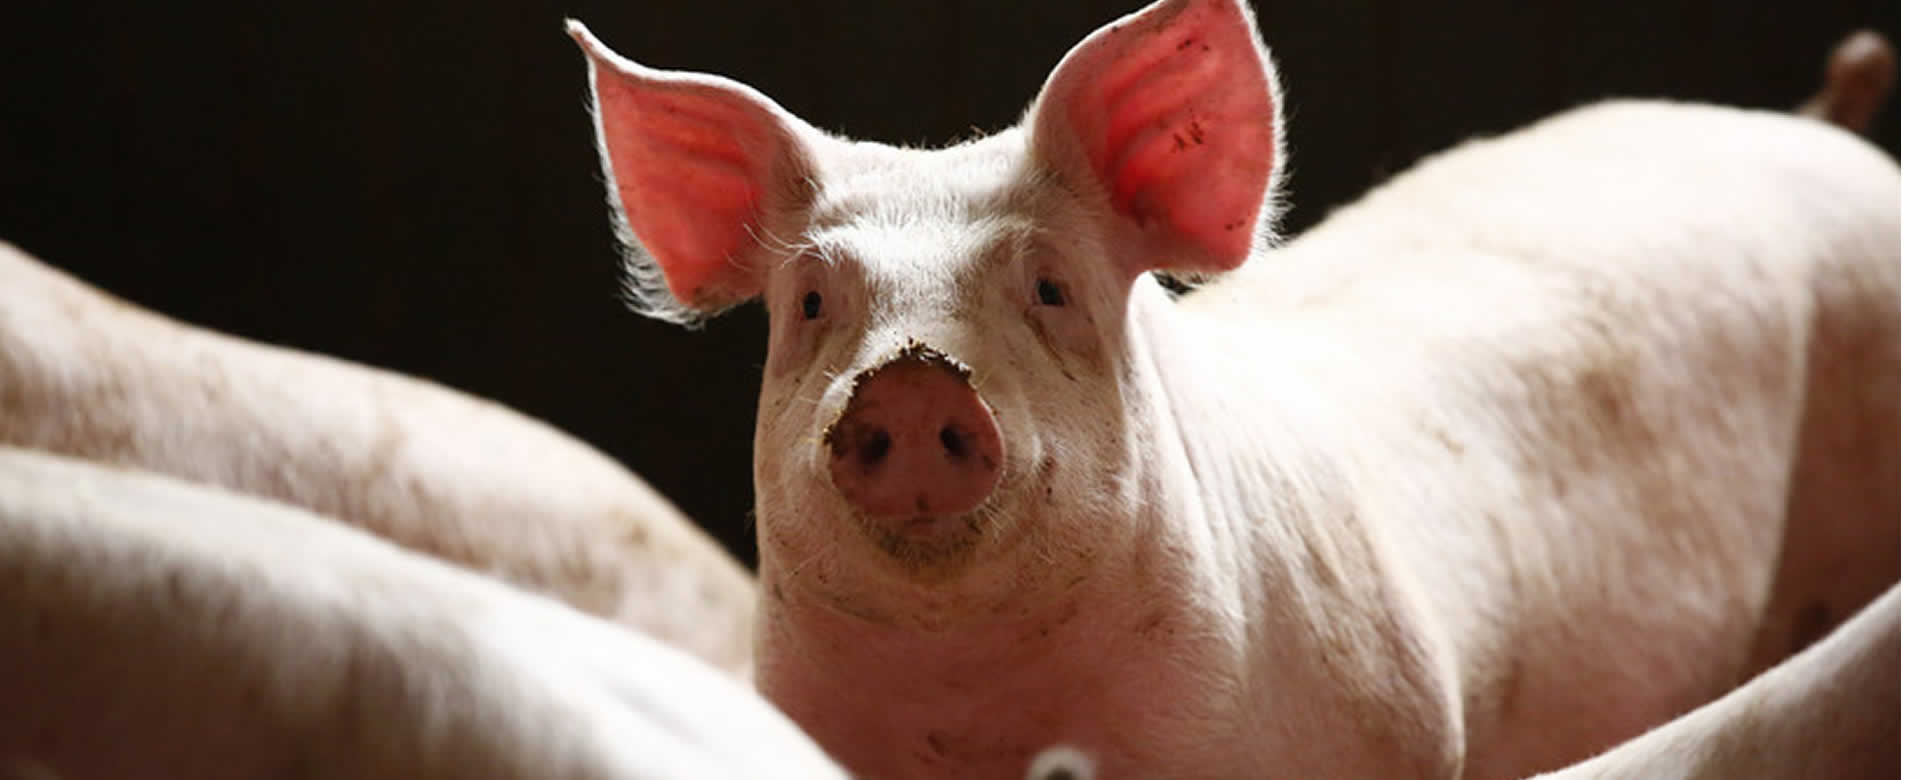 Alemania registra primer caso de peste porcina africana